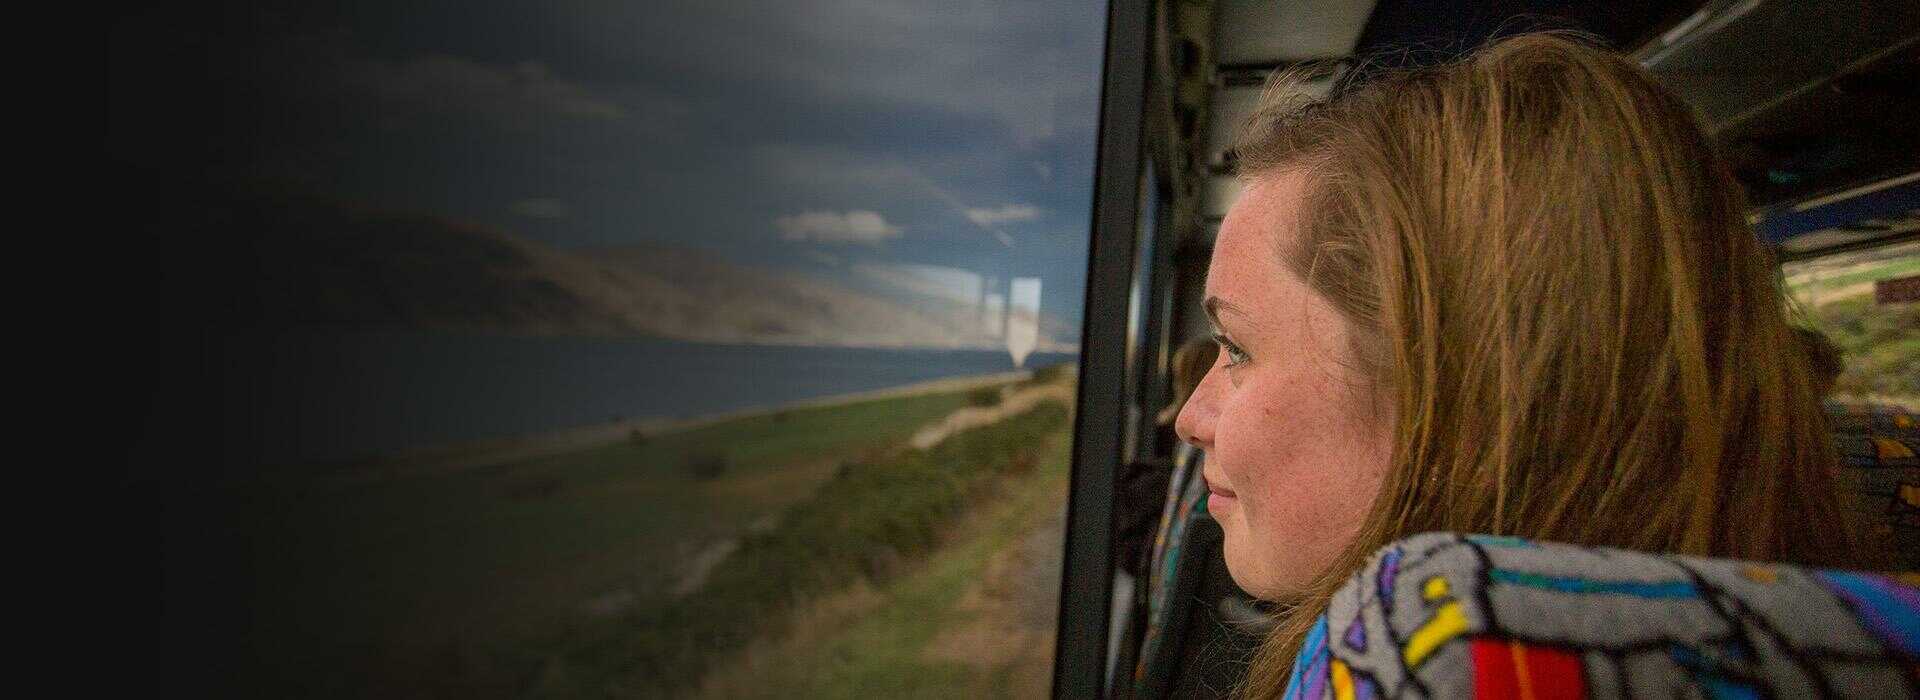 kobieta patrząca przez okno